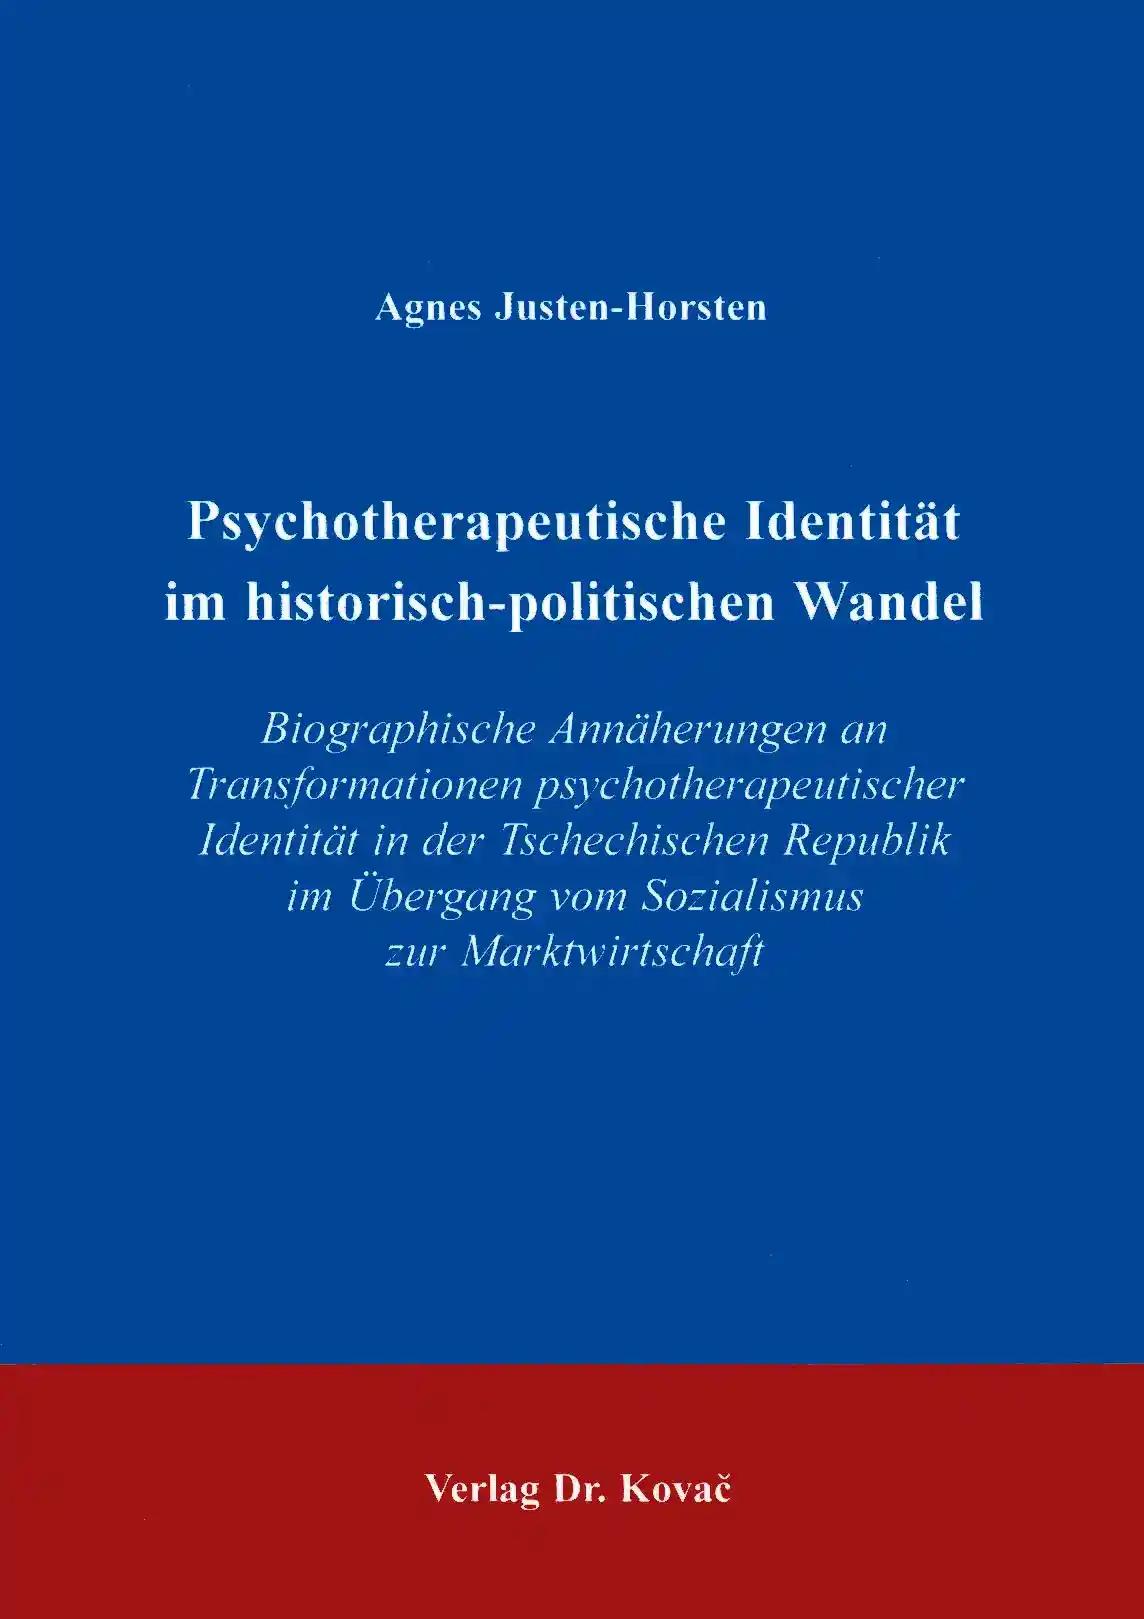 Psychotherapeutische Identität im historisch-politischen Wandel (Doktorarbeit)